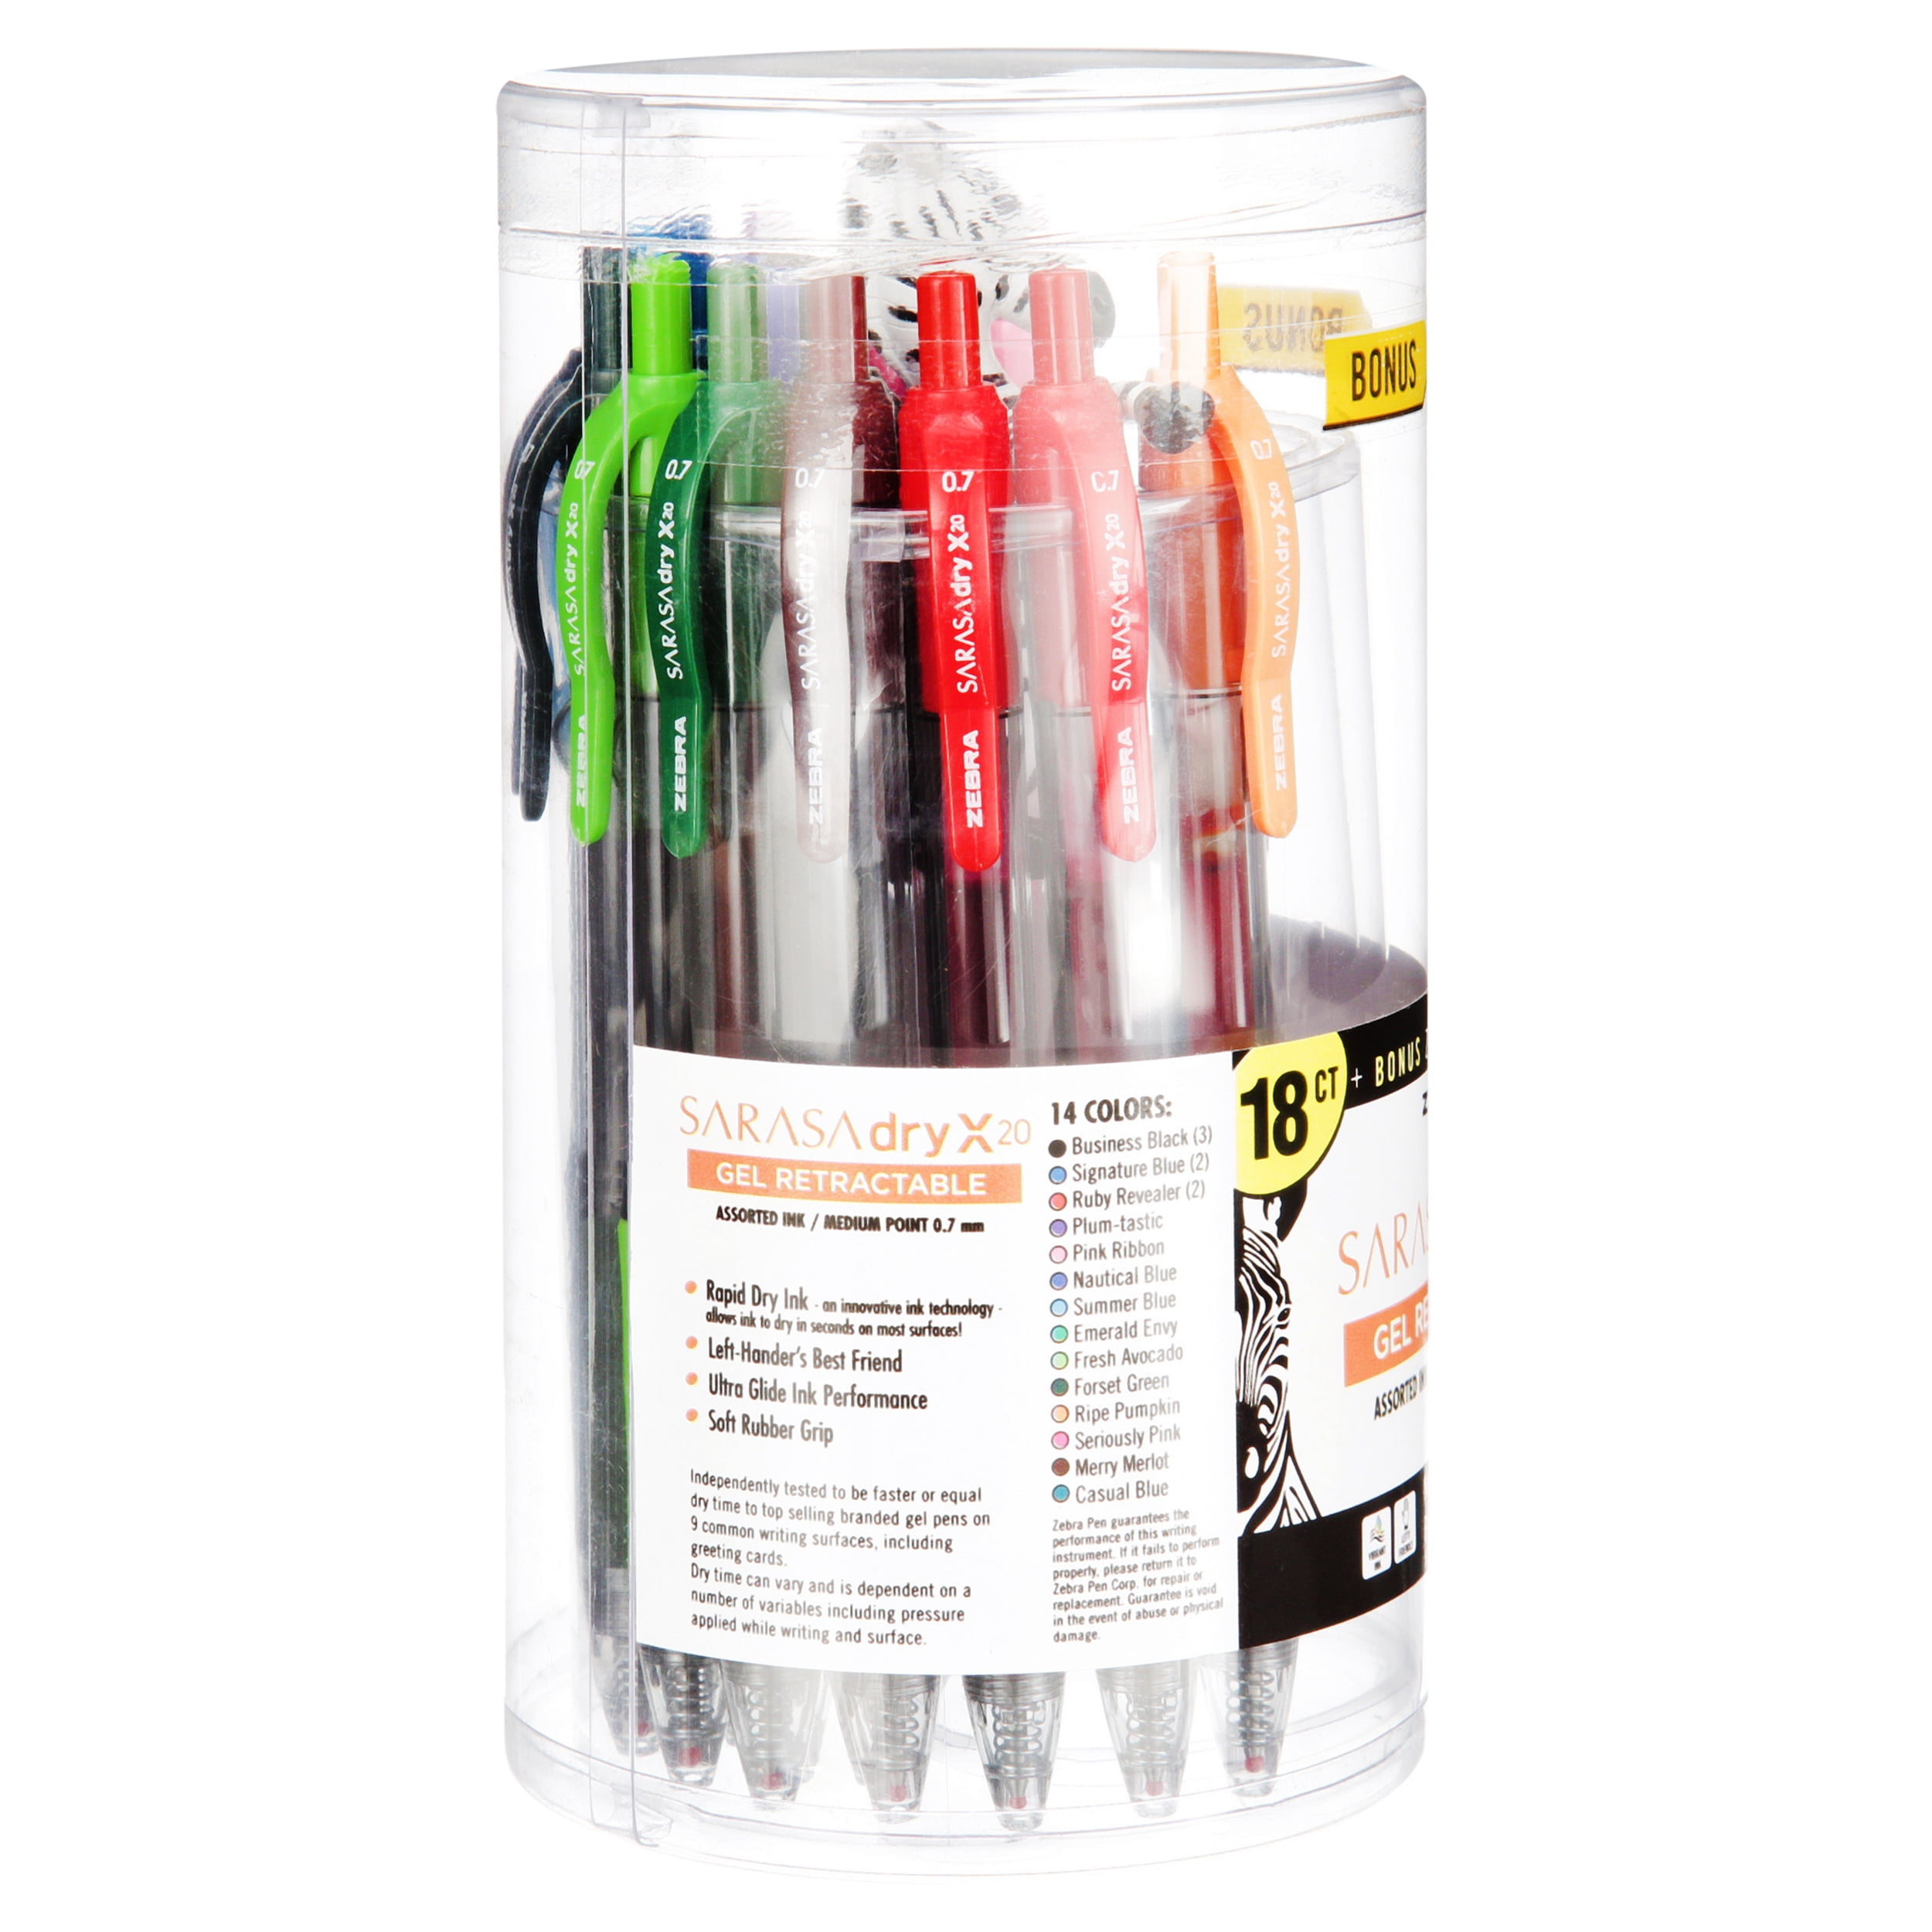 Zebra Sarasa Retractable Gel Pen Assorted Ink Medium 10/Pack